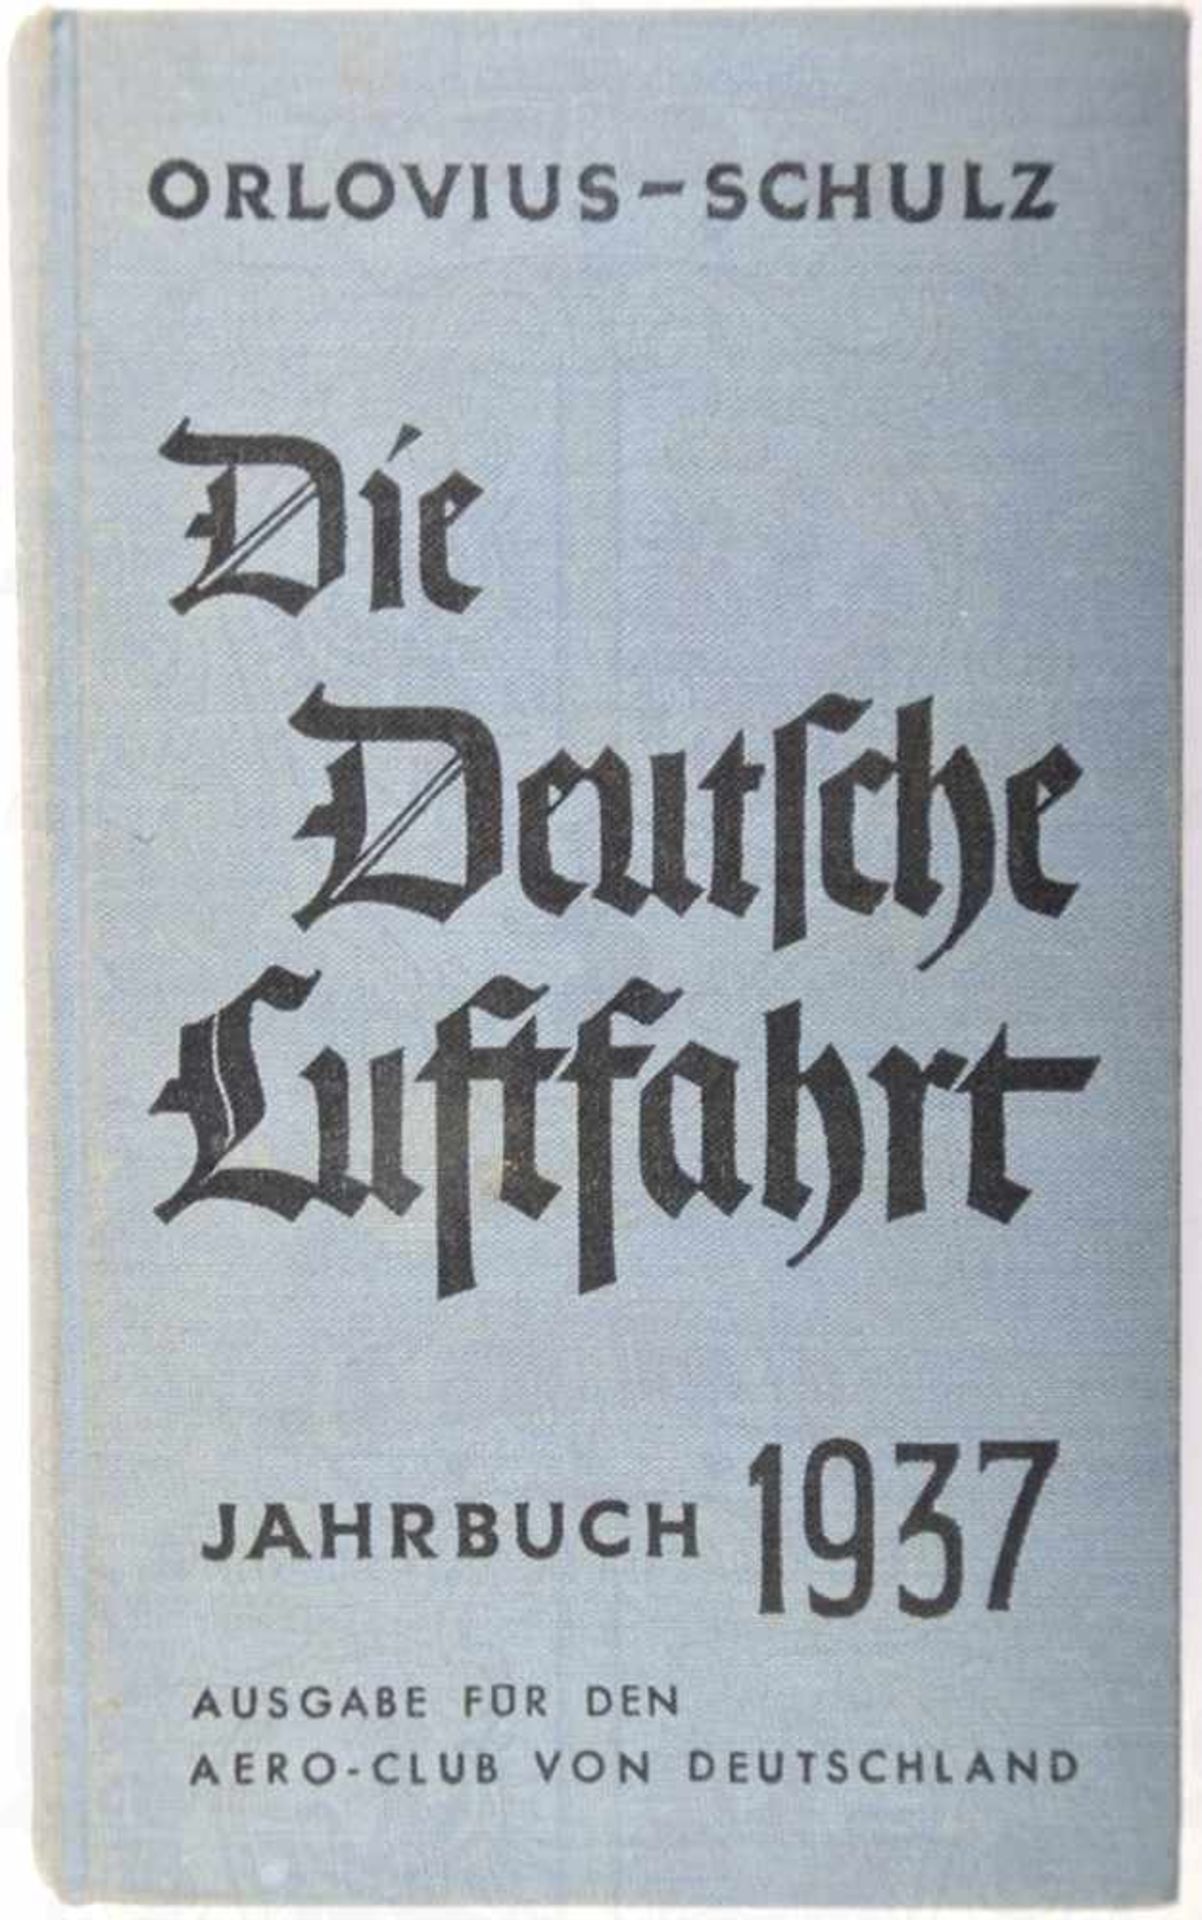 DIE DEUTSCHE LUFTFAHRT, „Jahrbuch 1937“, H. Orlovius/R. Schulz, Frankfurt/M., 320 S., zahlr. Abb.,